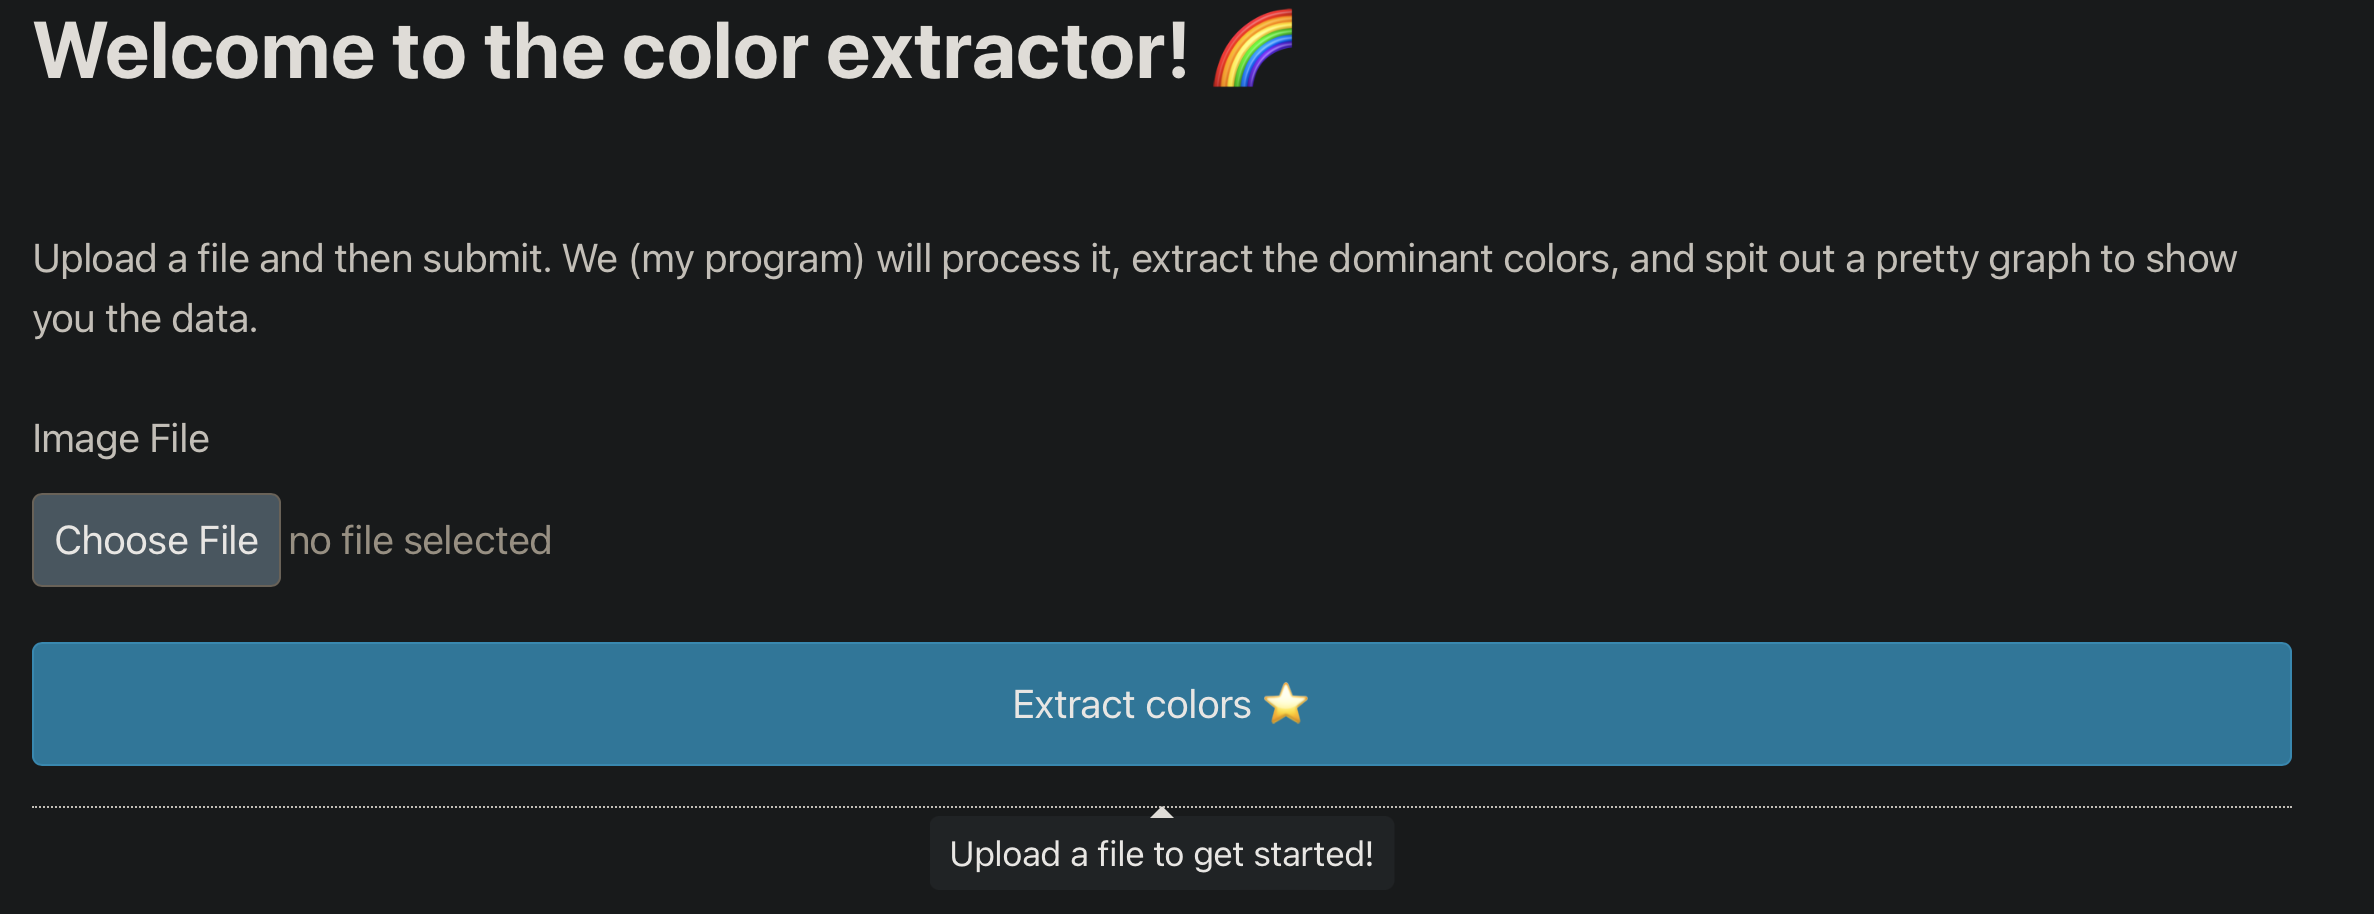 color extractor website